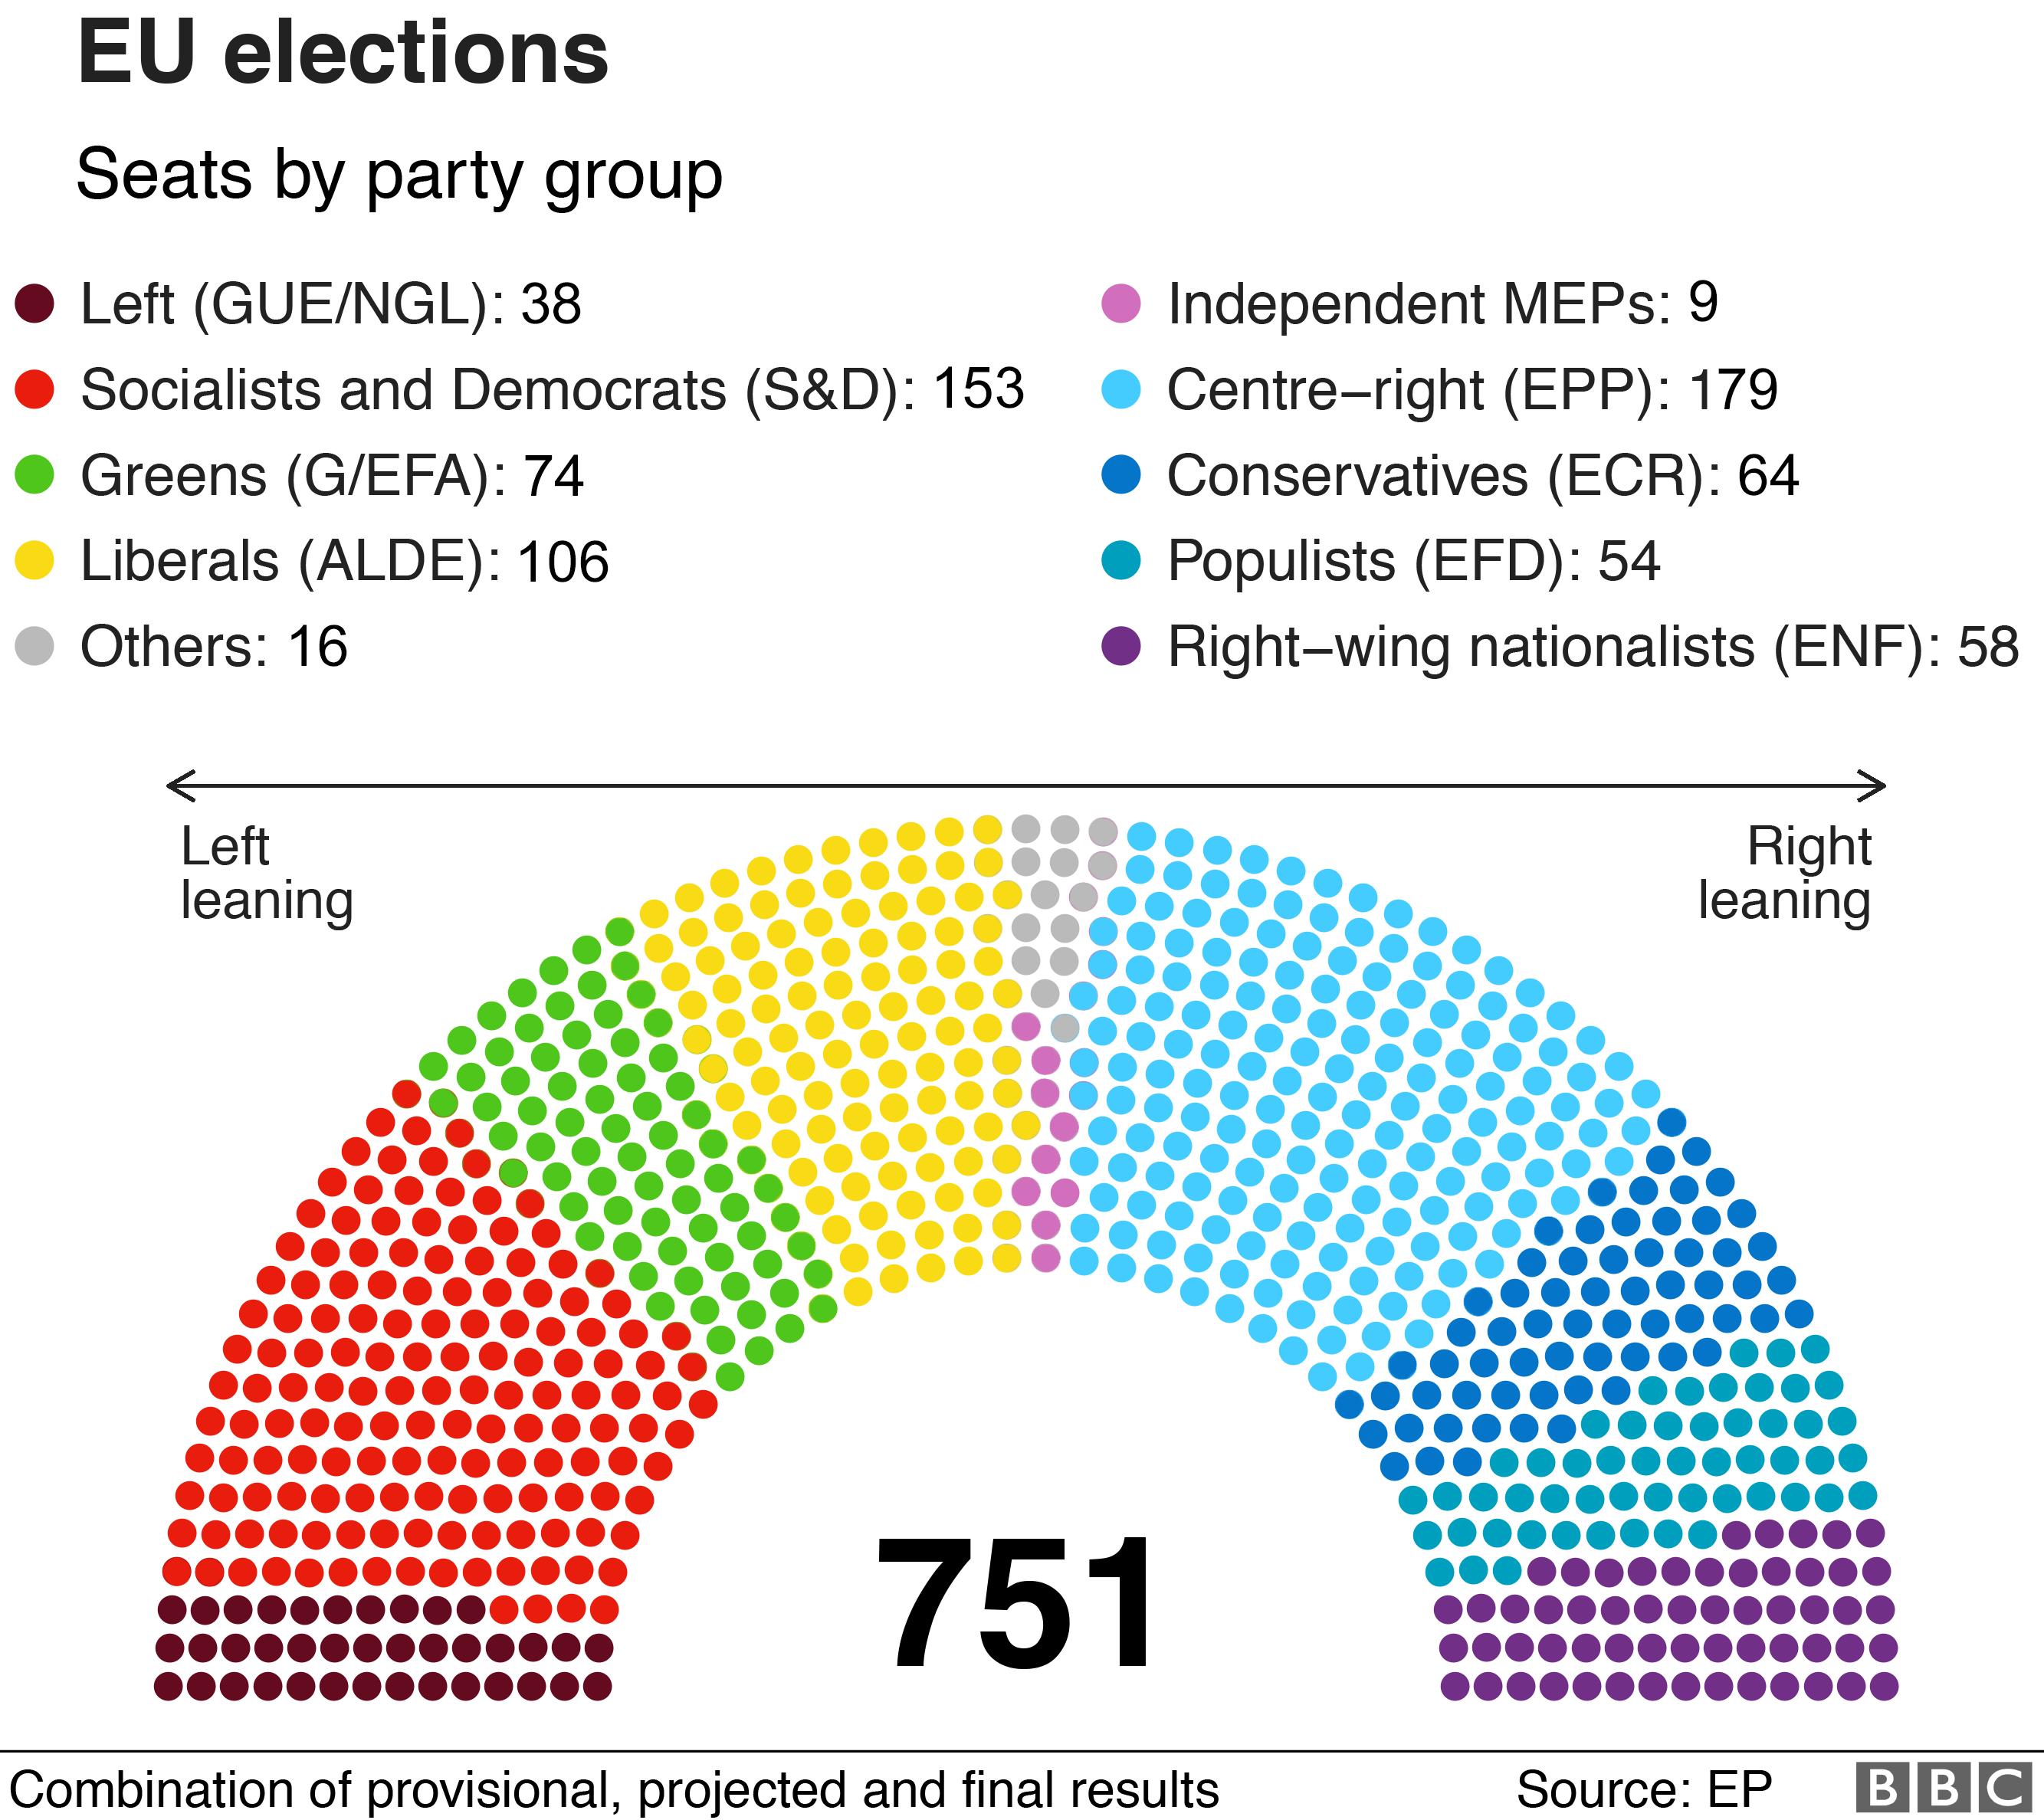 Результаты по партийным группам.Крупнейшая EPP - 179 из 751